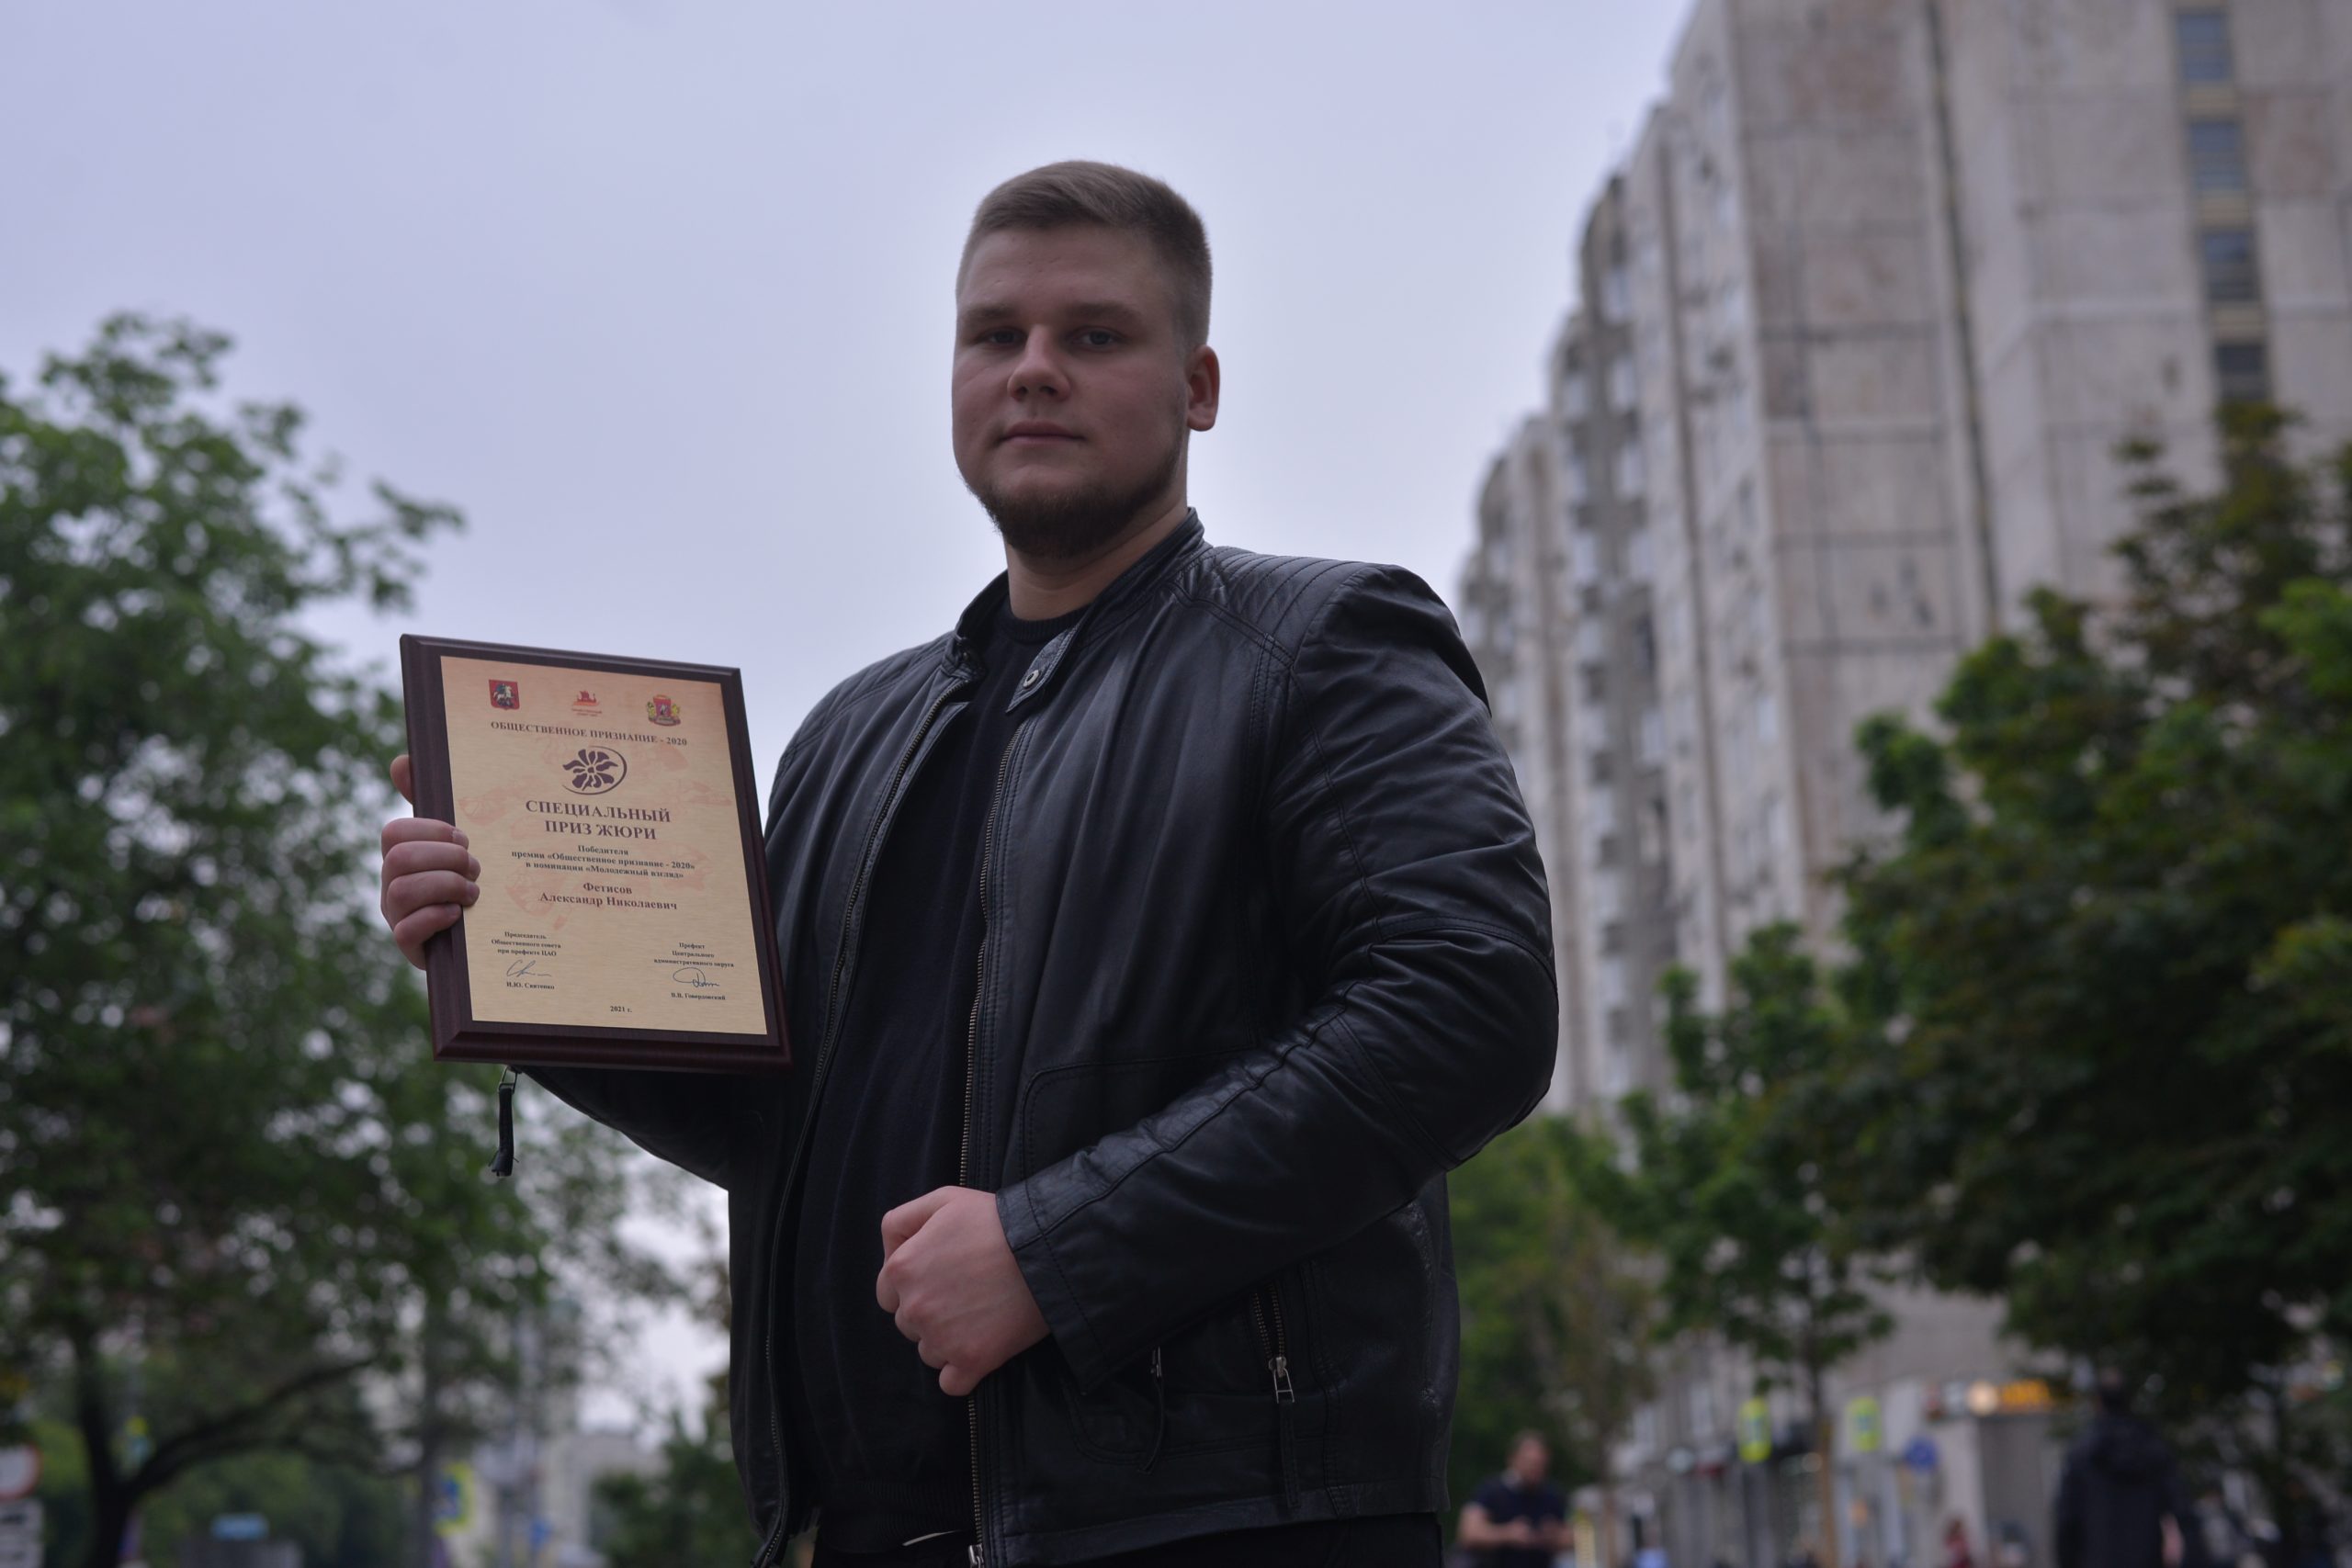 13 июня 2021 года. Студент Александр Фетисов показывает награду, которую он получил на окружном конкурсе. Фото: Анна Малакмадзе, «Вечерняя Москва»